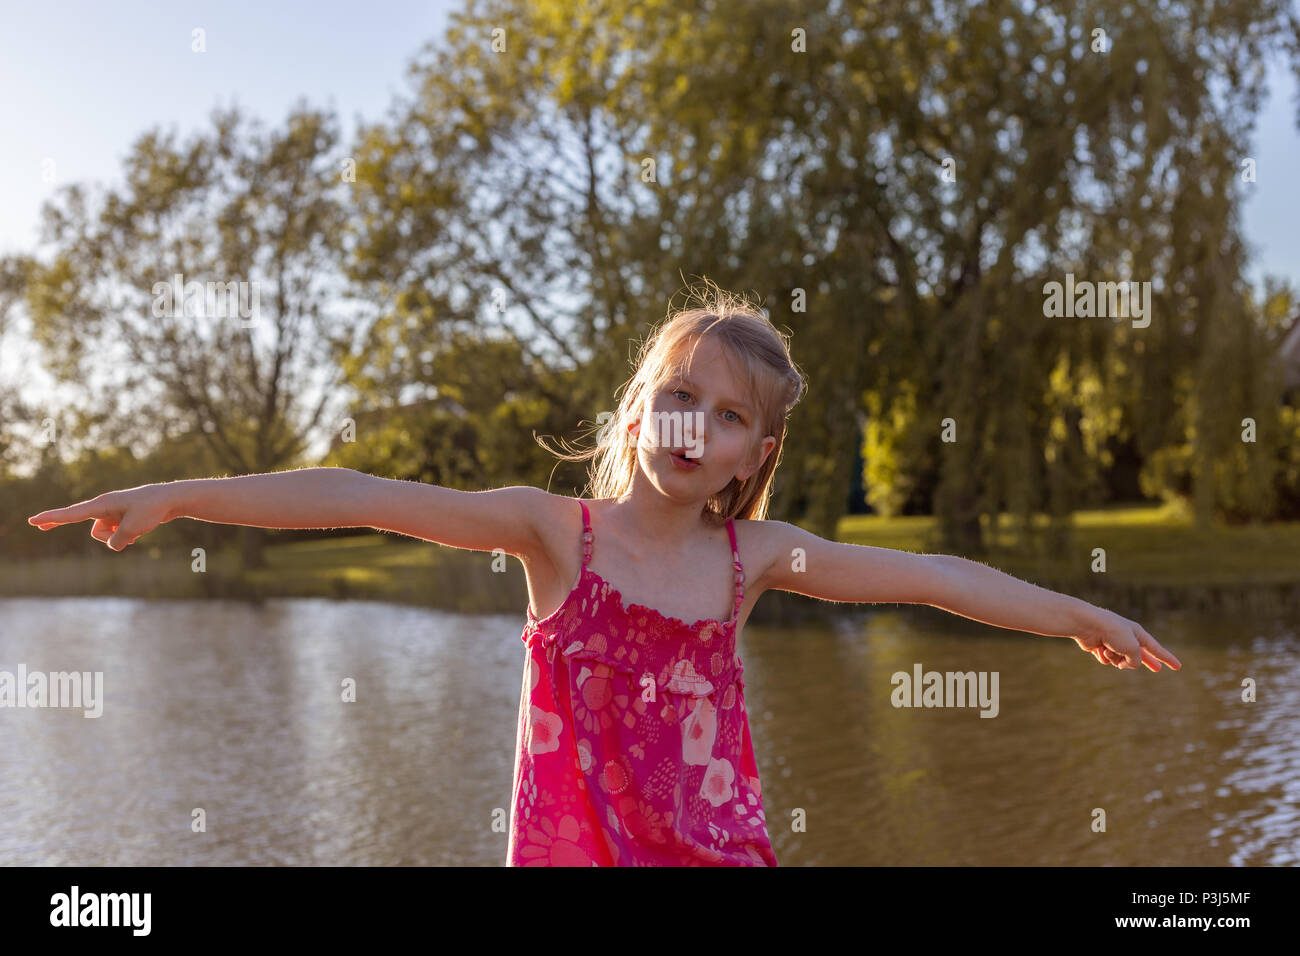 Une fillette de 7 ans s'étend ses bras et fait un avion en vol Banque D'Images